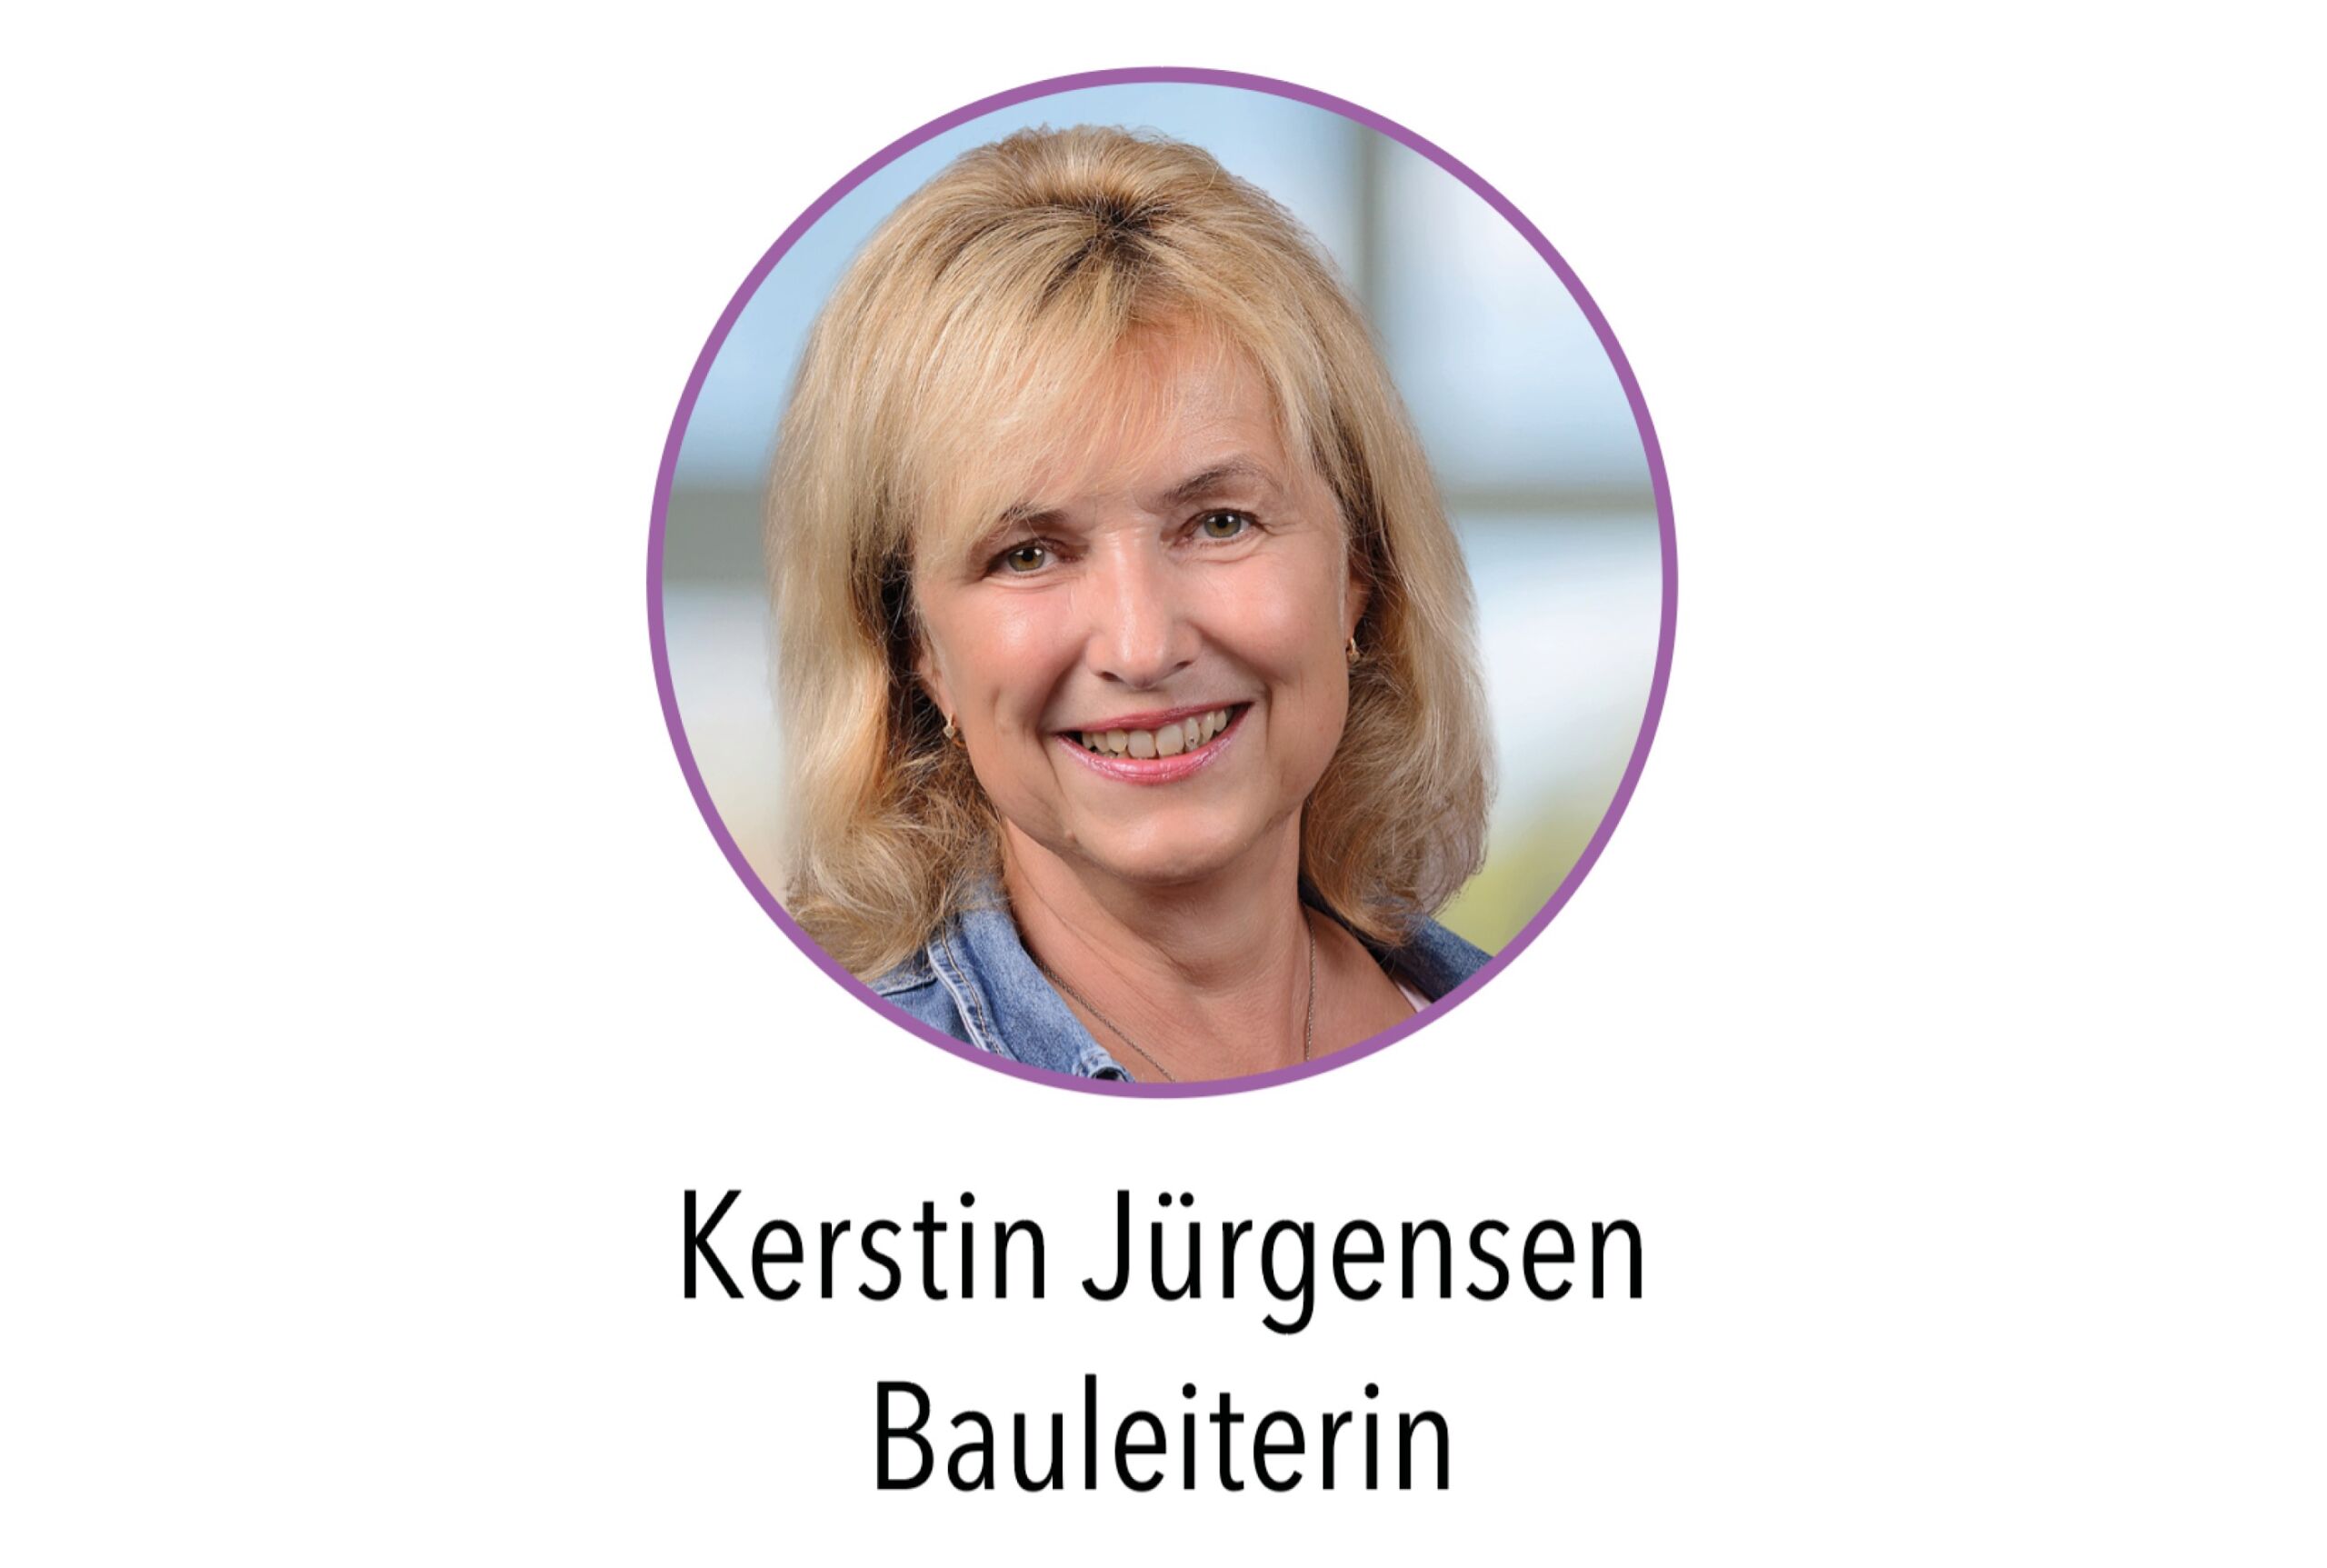 Kerstin Jürgensen mit Namen